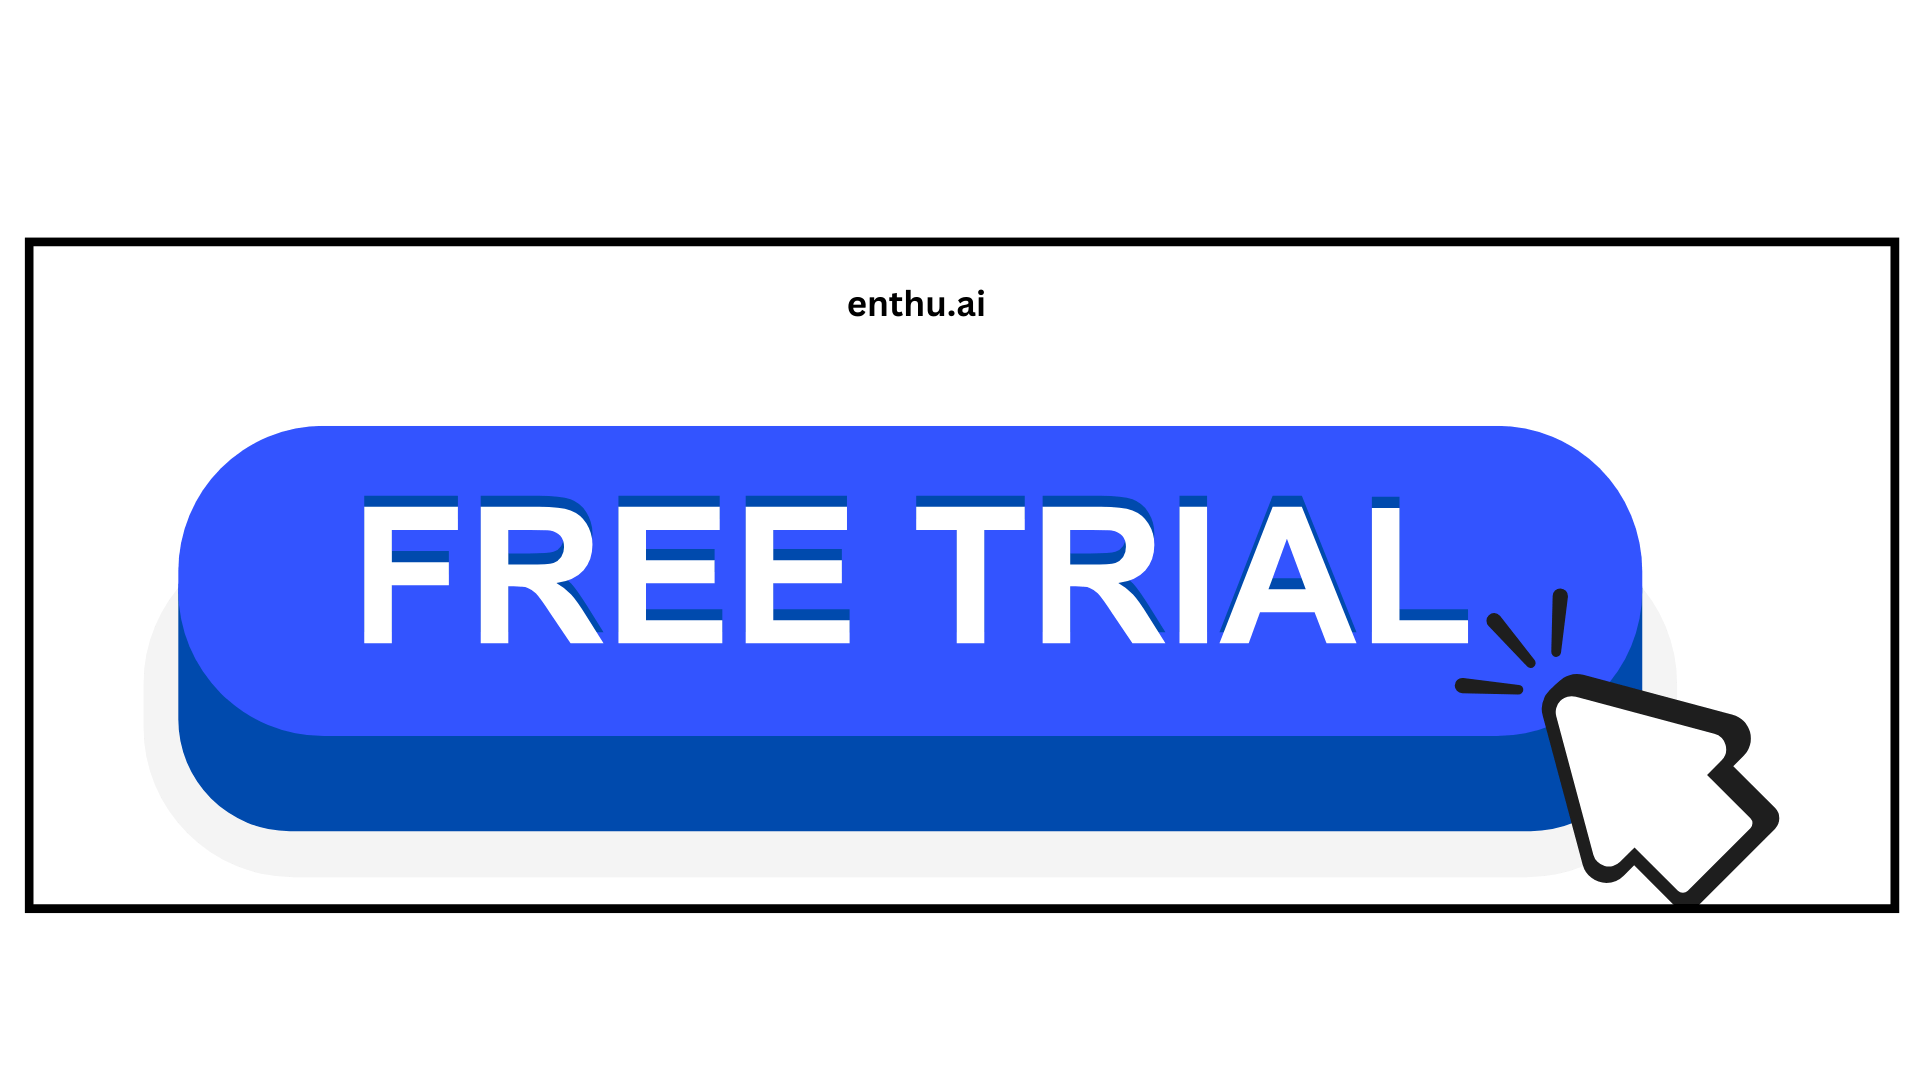 Provide a trial period